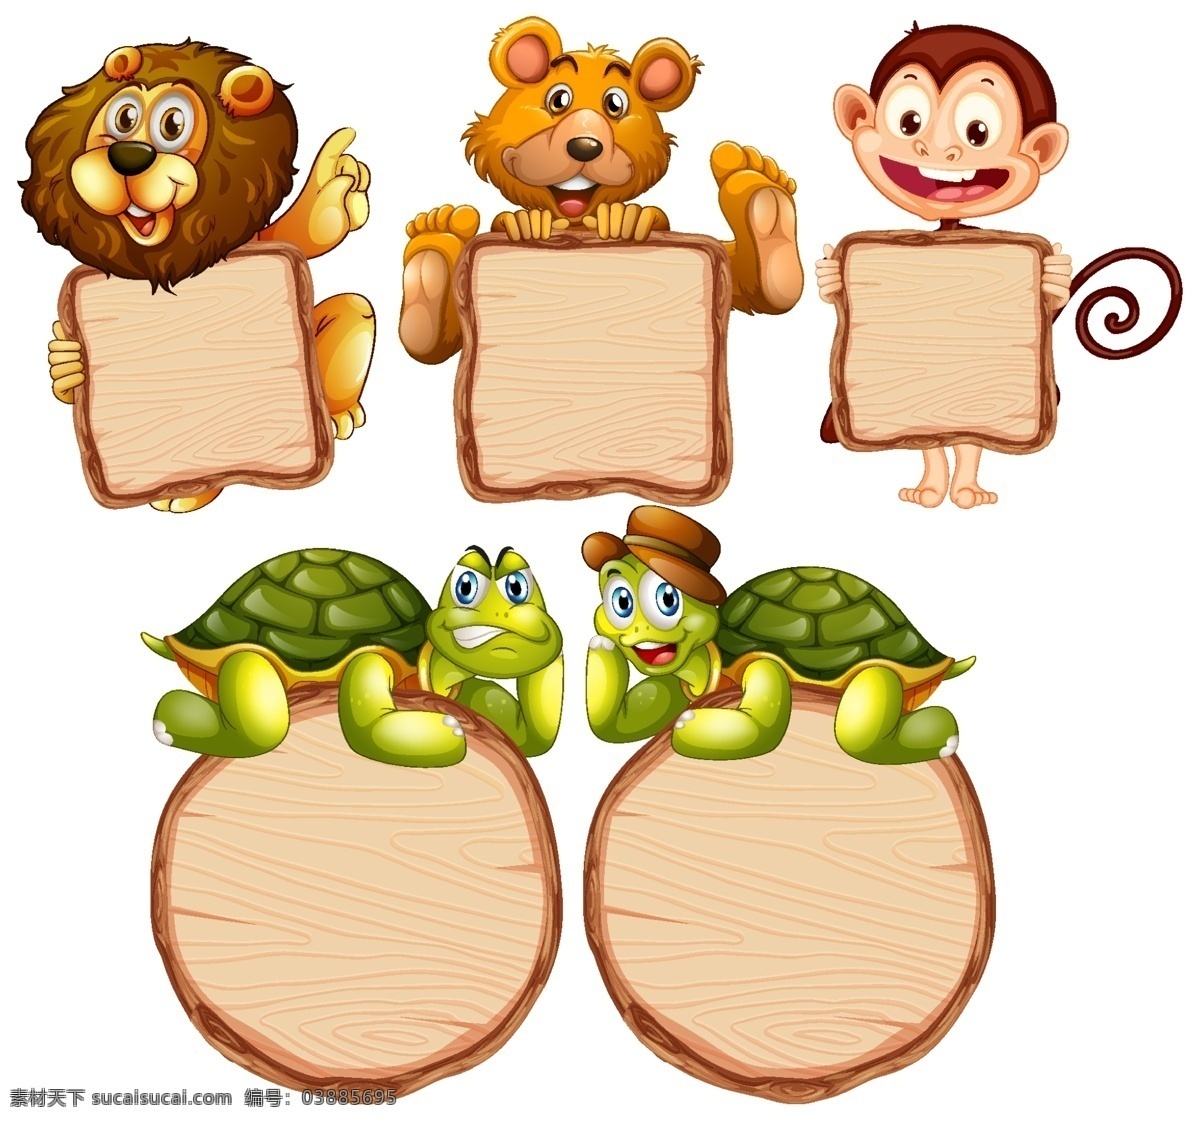 动物 文本 动物和文本 卡通动物 空白板 记事 幼儿园 动物素材 动物背景 卡通动物生物 卡通设计